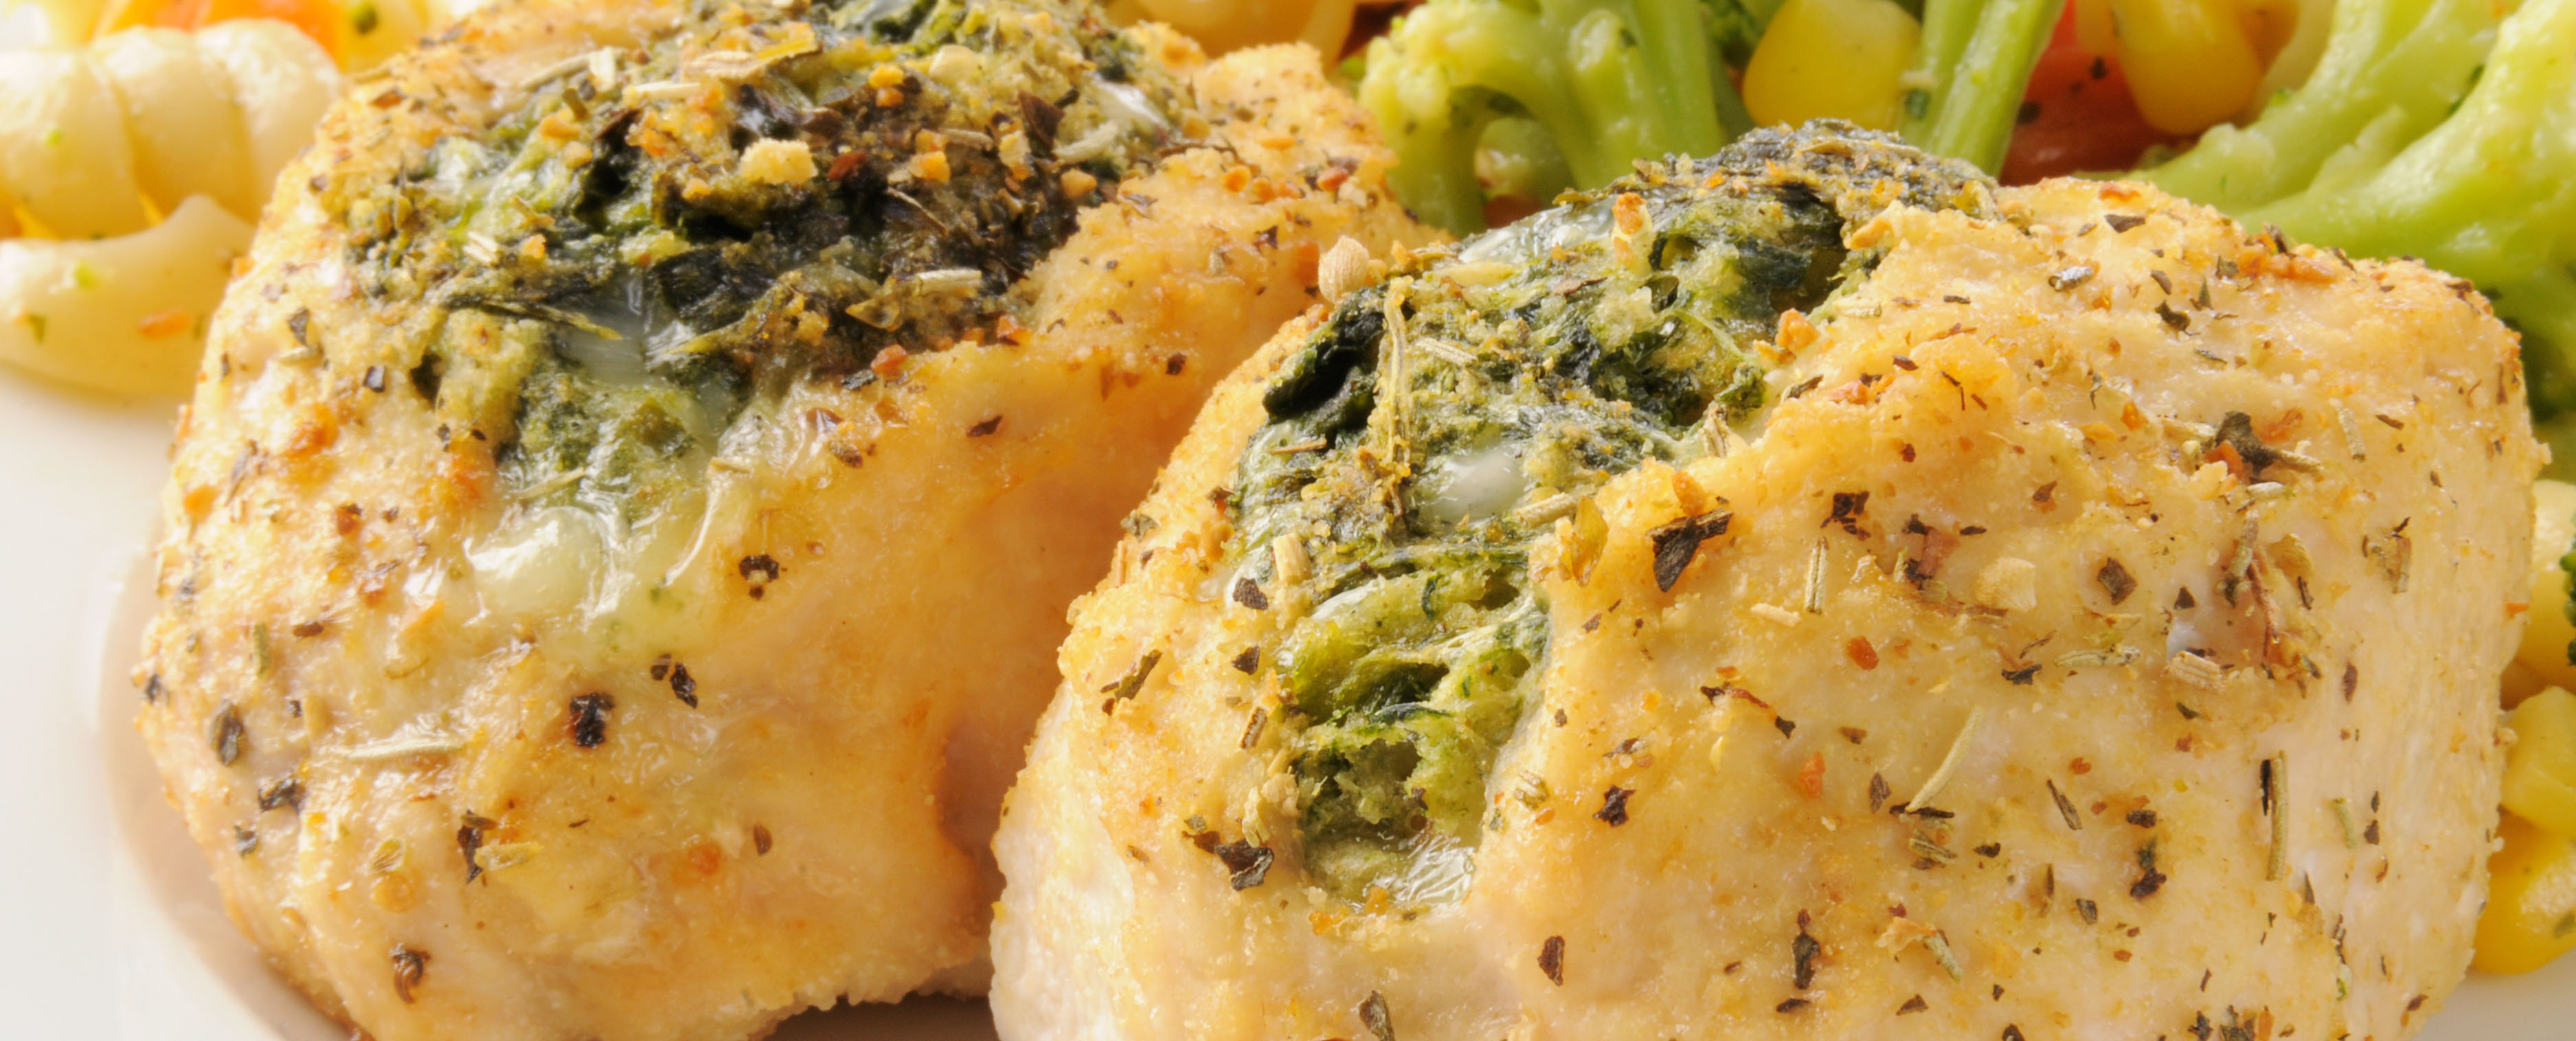 Broccoli & Cheddar Stuffed Chicken